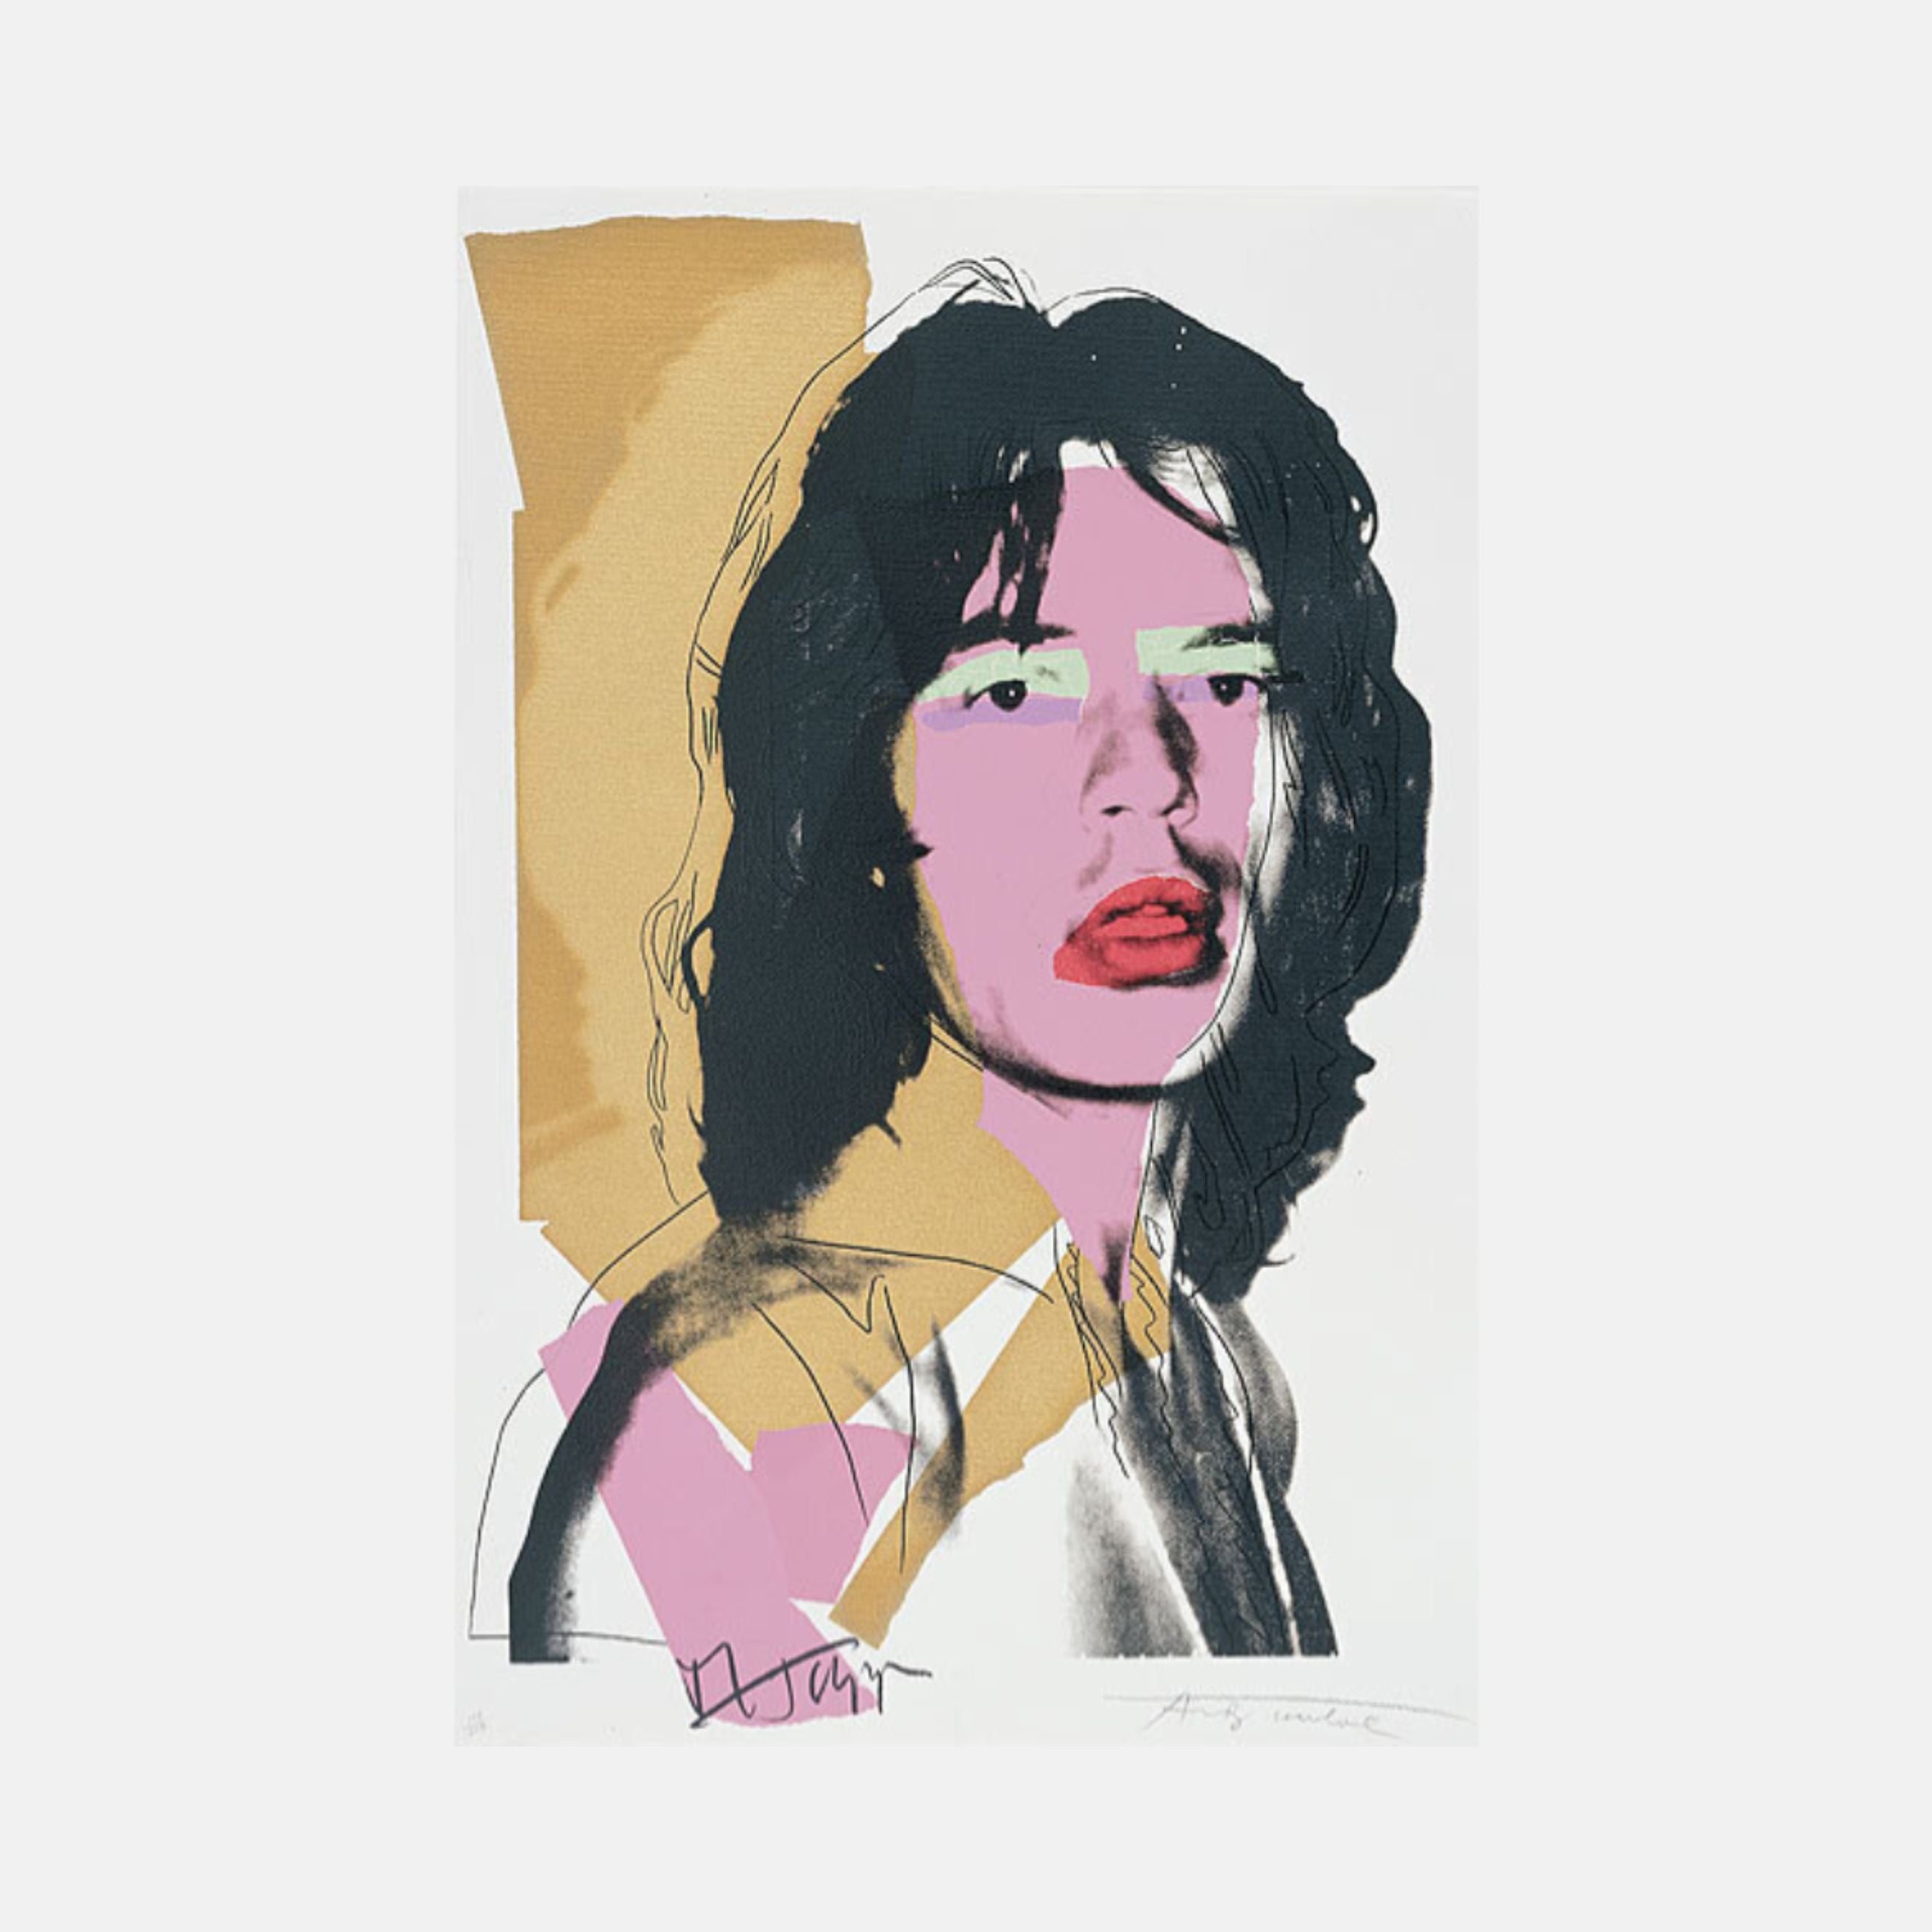 Andy Warhol, Mick Jagger (F & S II.143), 1975